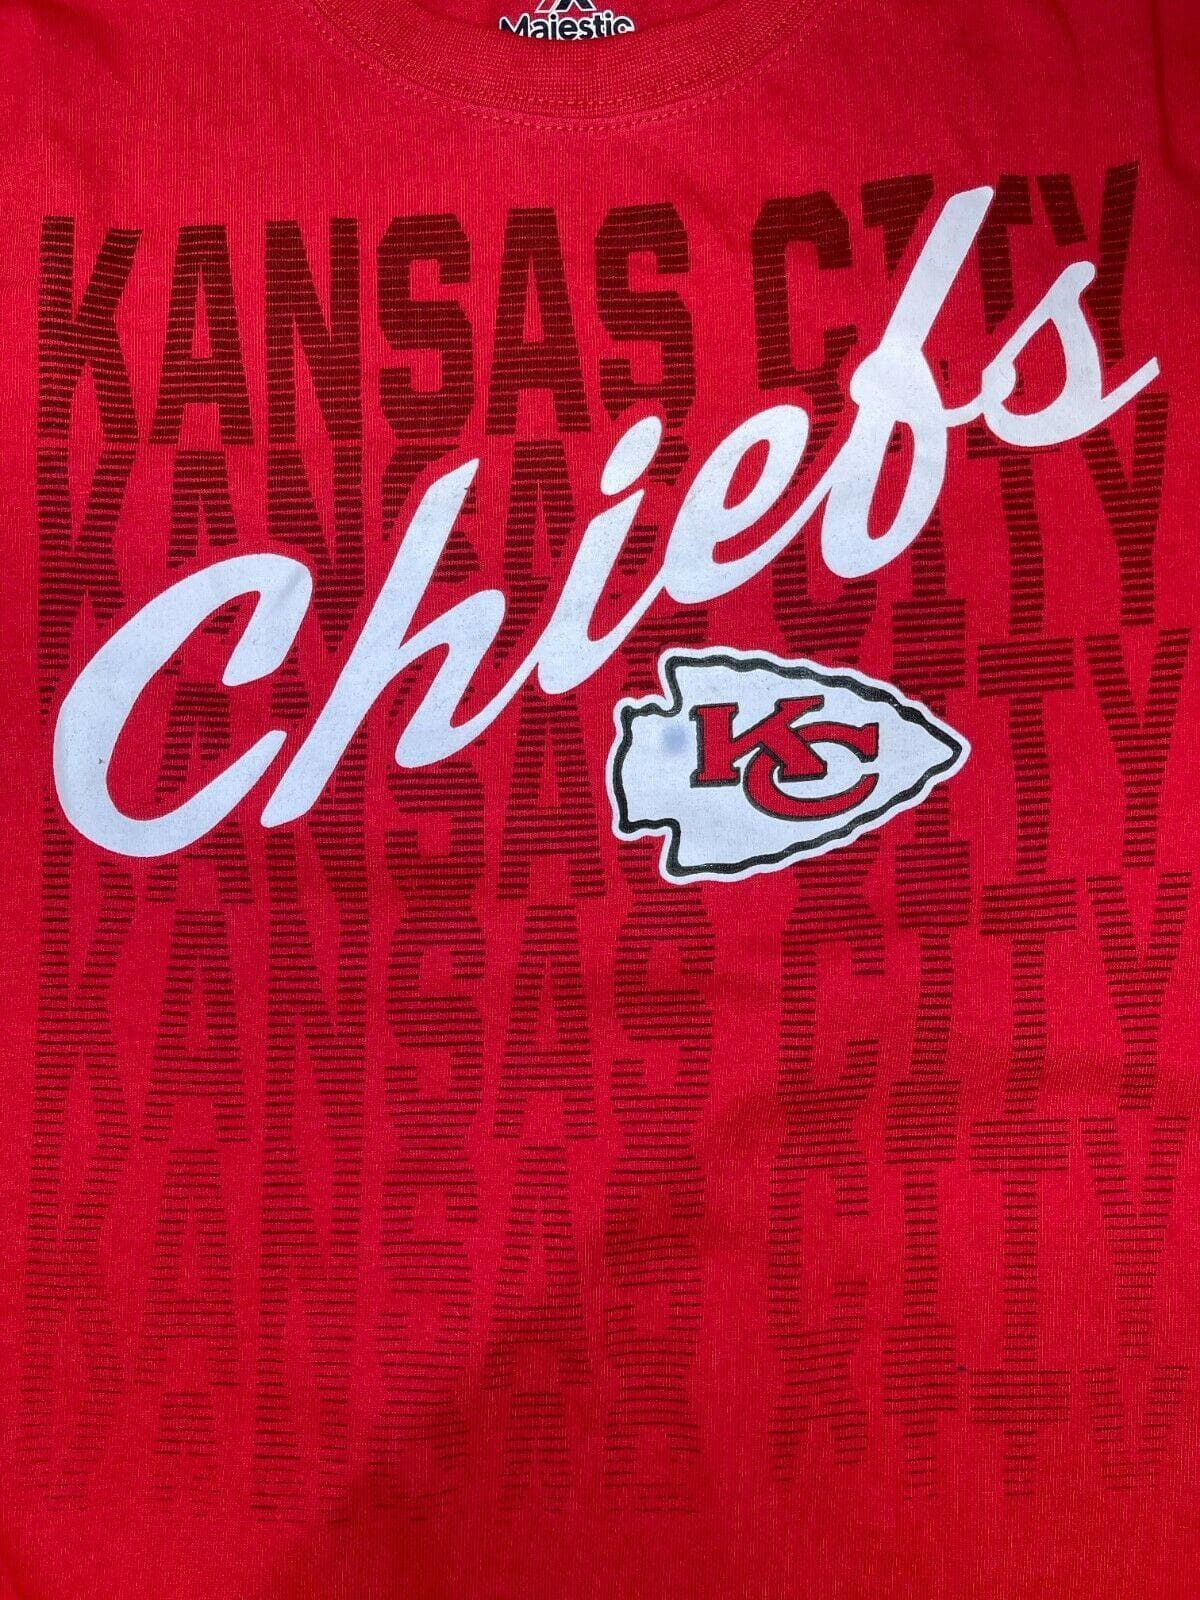 NFL Kansas City Chiefs Majestic Women's Plus Size T-Shirt Large NWT